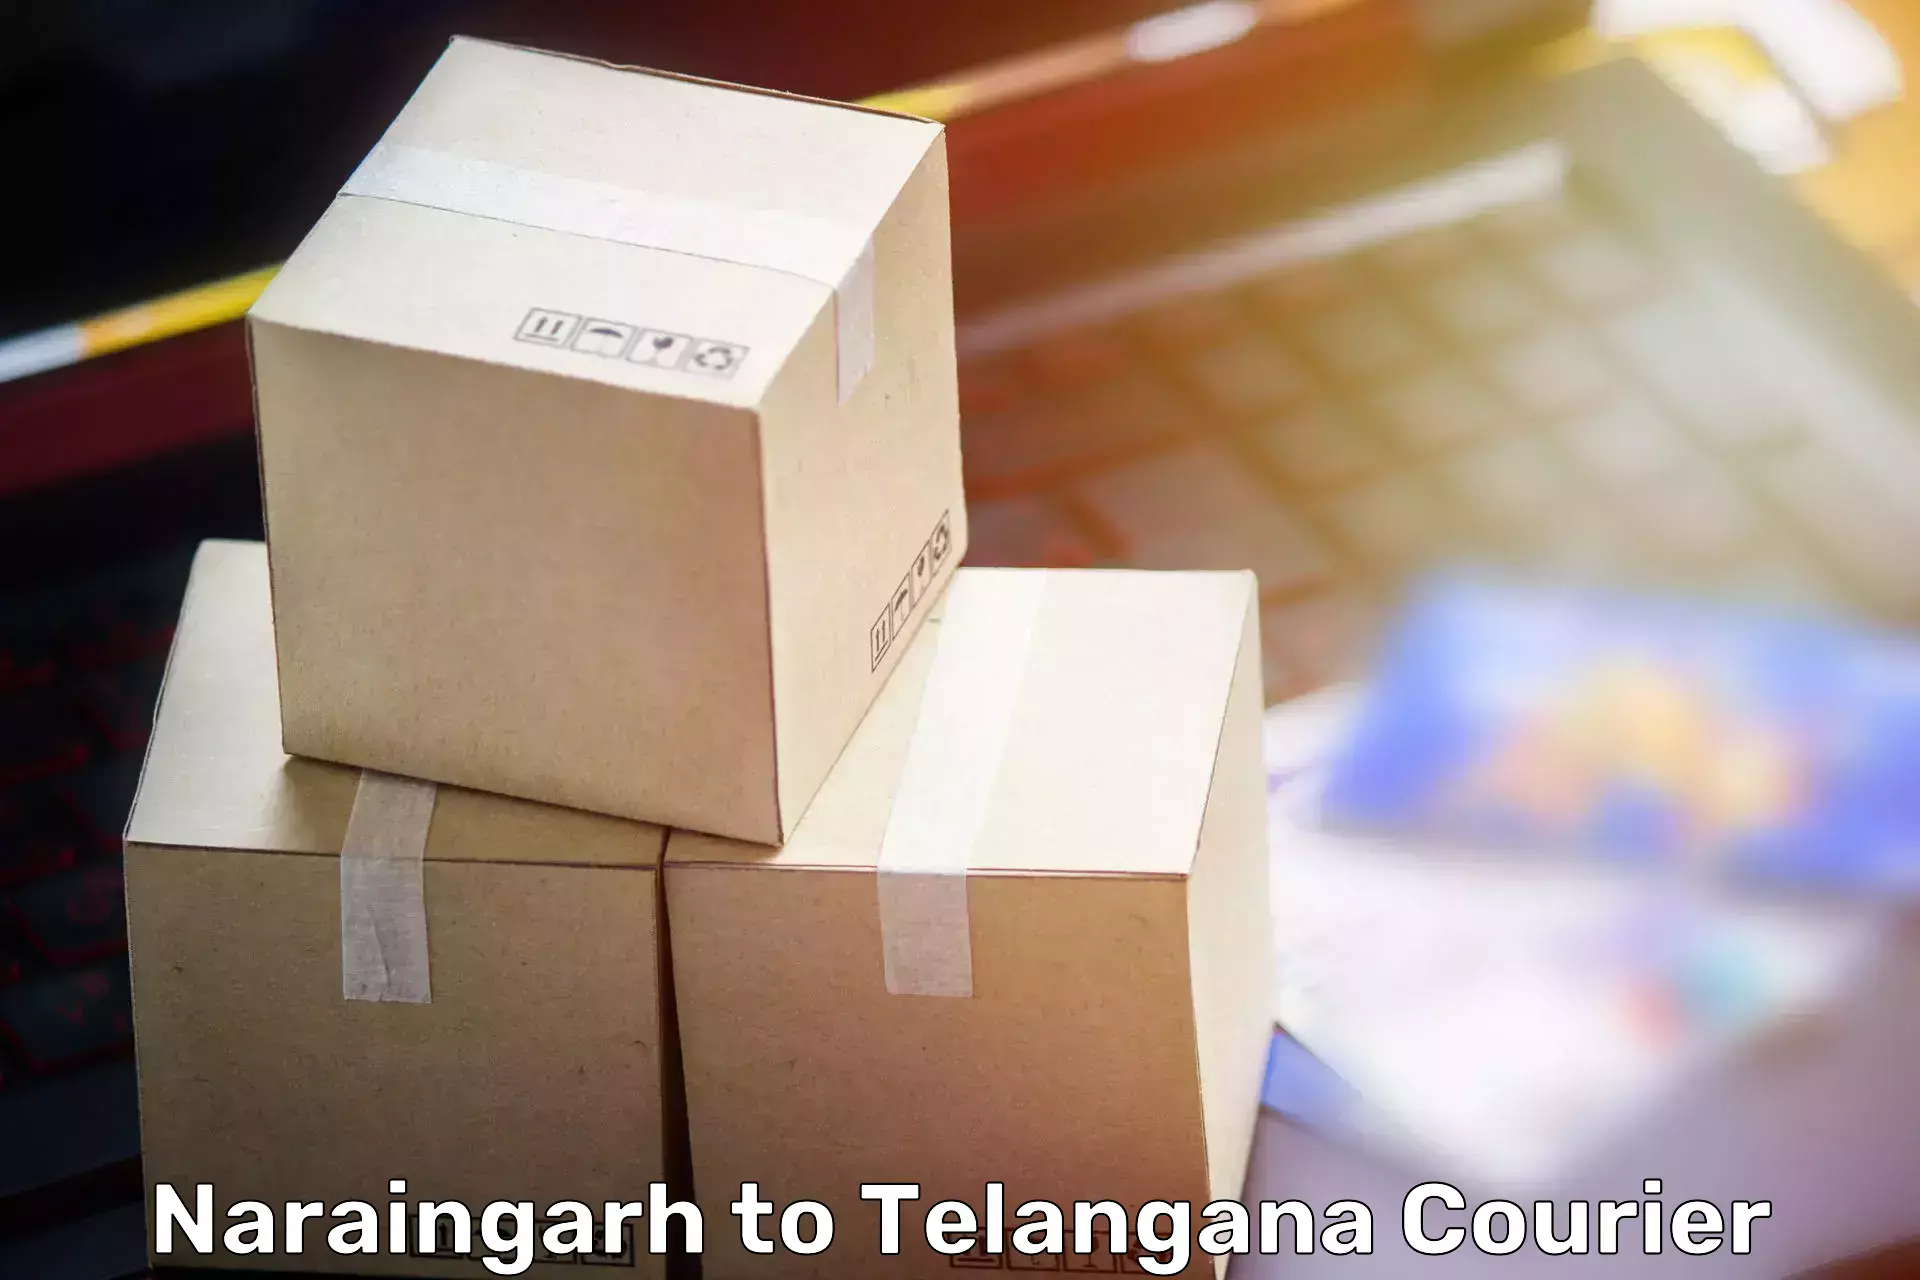 Moving and packing experts Naraingarh to Bhuvanagiri